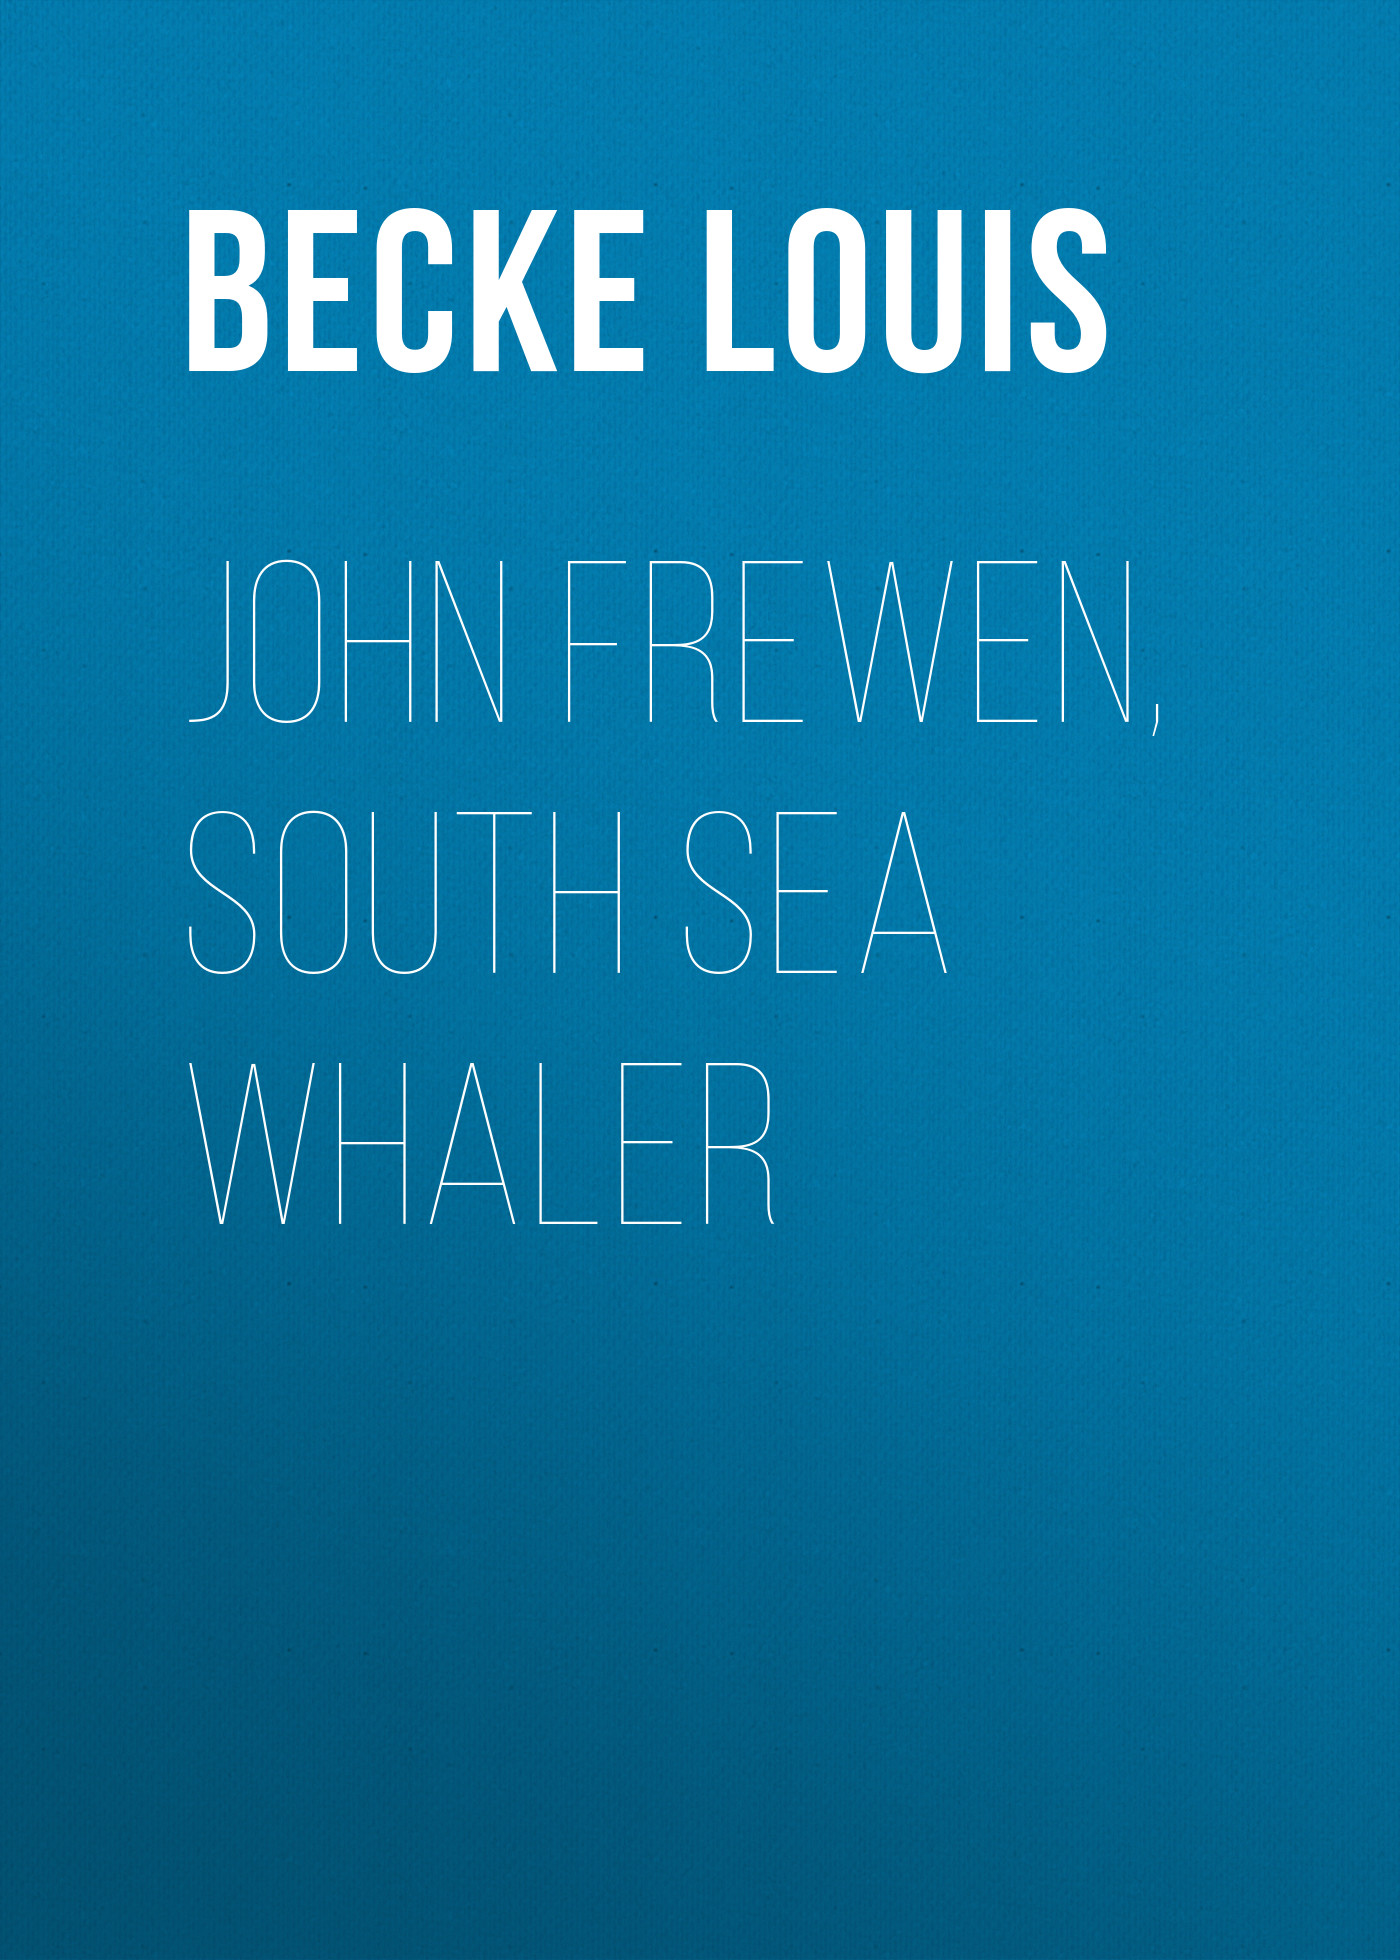 Книга John Frewen, South Sea Whaler из серии , созданная Louis Becke, может относится к жанру Зарубежная классика, Литература 19 века, Зарубежная старинная литература. Стоимость электронной книги John Frewen, South Sea Whaler с идентификатором 36367030 составляет 0 руб.